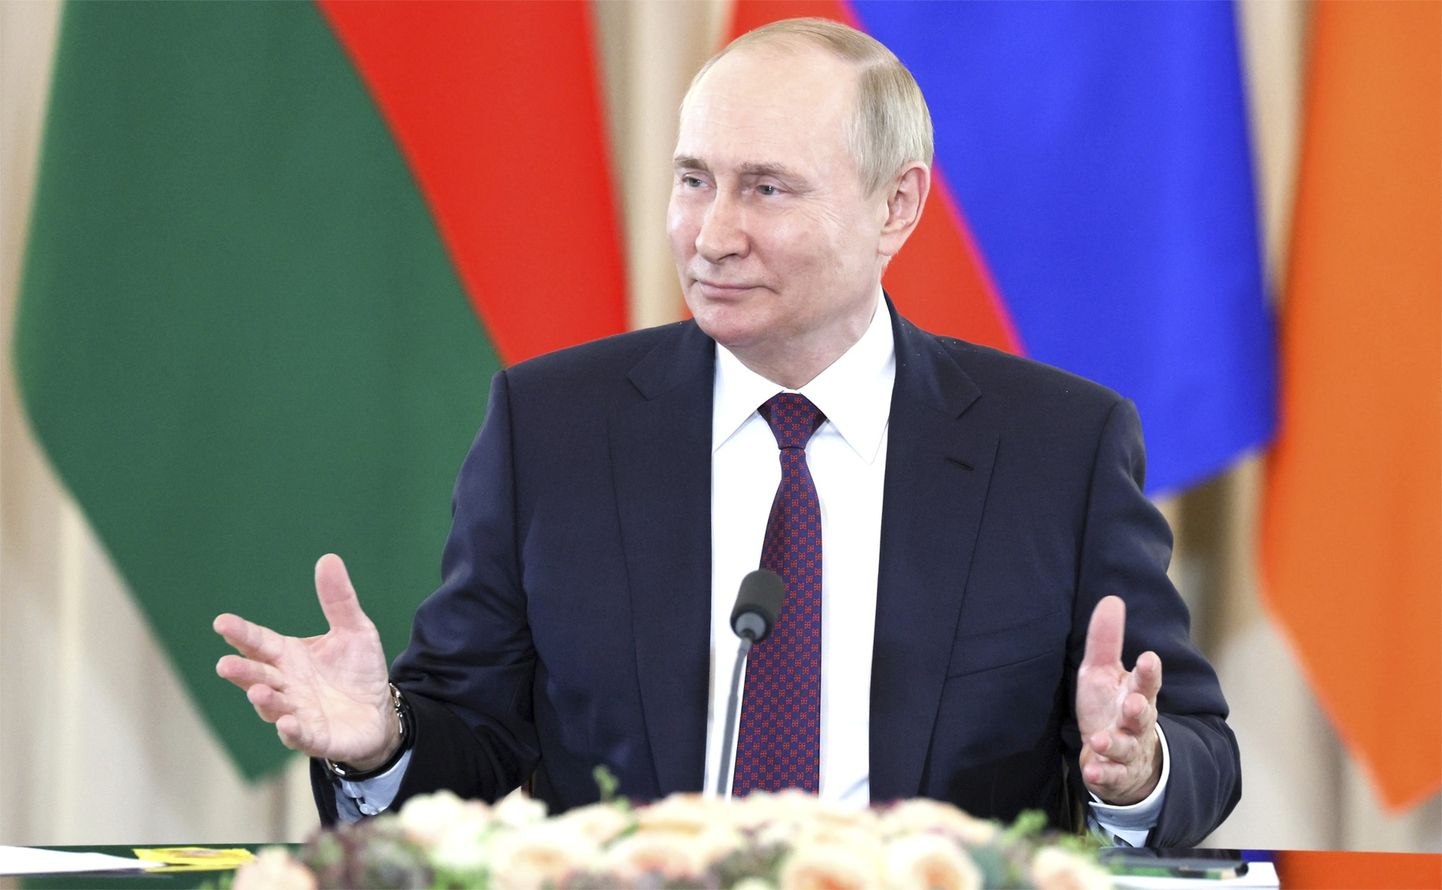 Venemaa riigipea Vladimir Putin 31. oktoobril 2022. aastal Sotšis kohtumisel Aserbaidžaani presidendi İlham Əliyevi ja Armeenia peaministri Nikol Pašinjaniga.